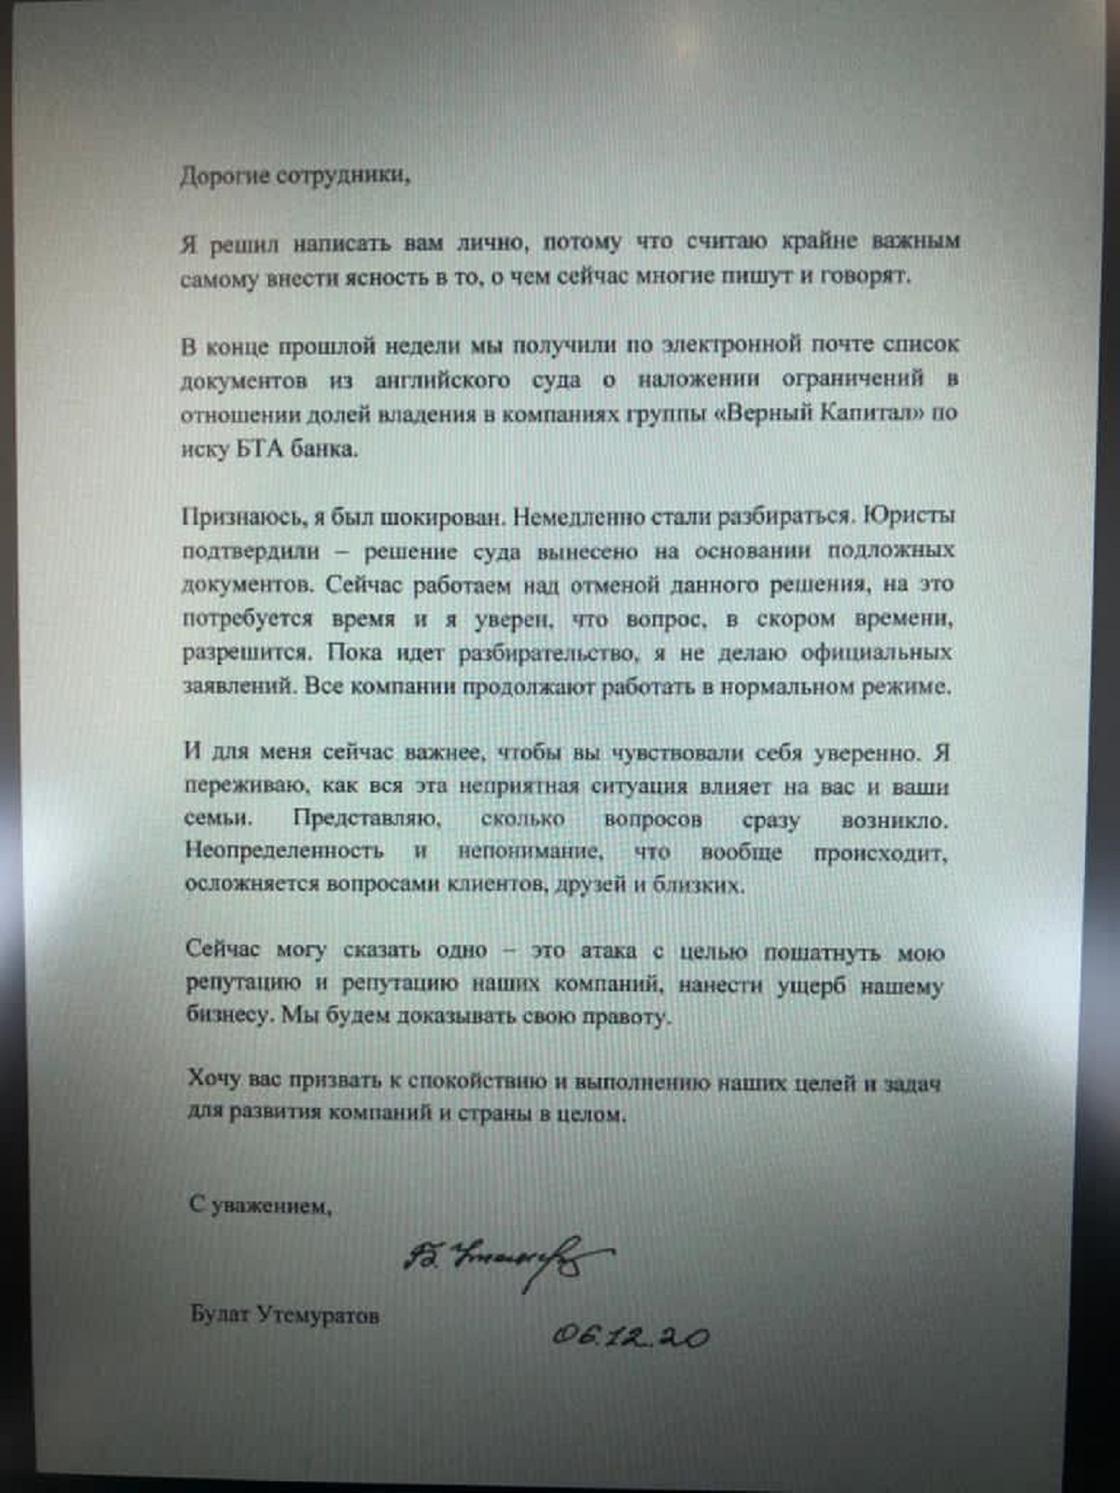 Письмо Булата Утемуратова сотрудникам группы компаний "Верный капитал"